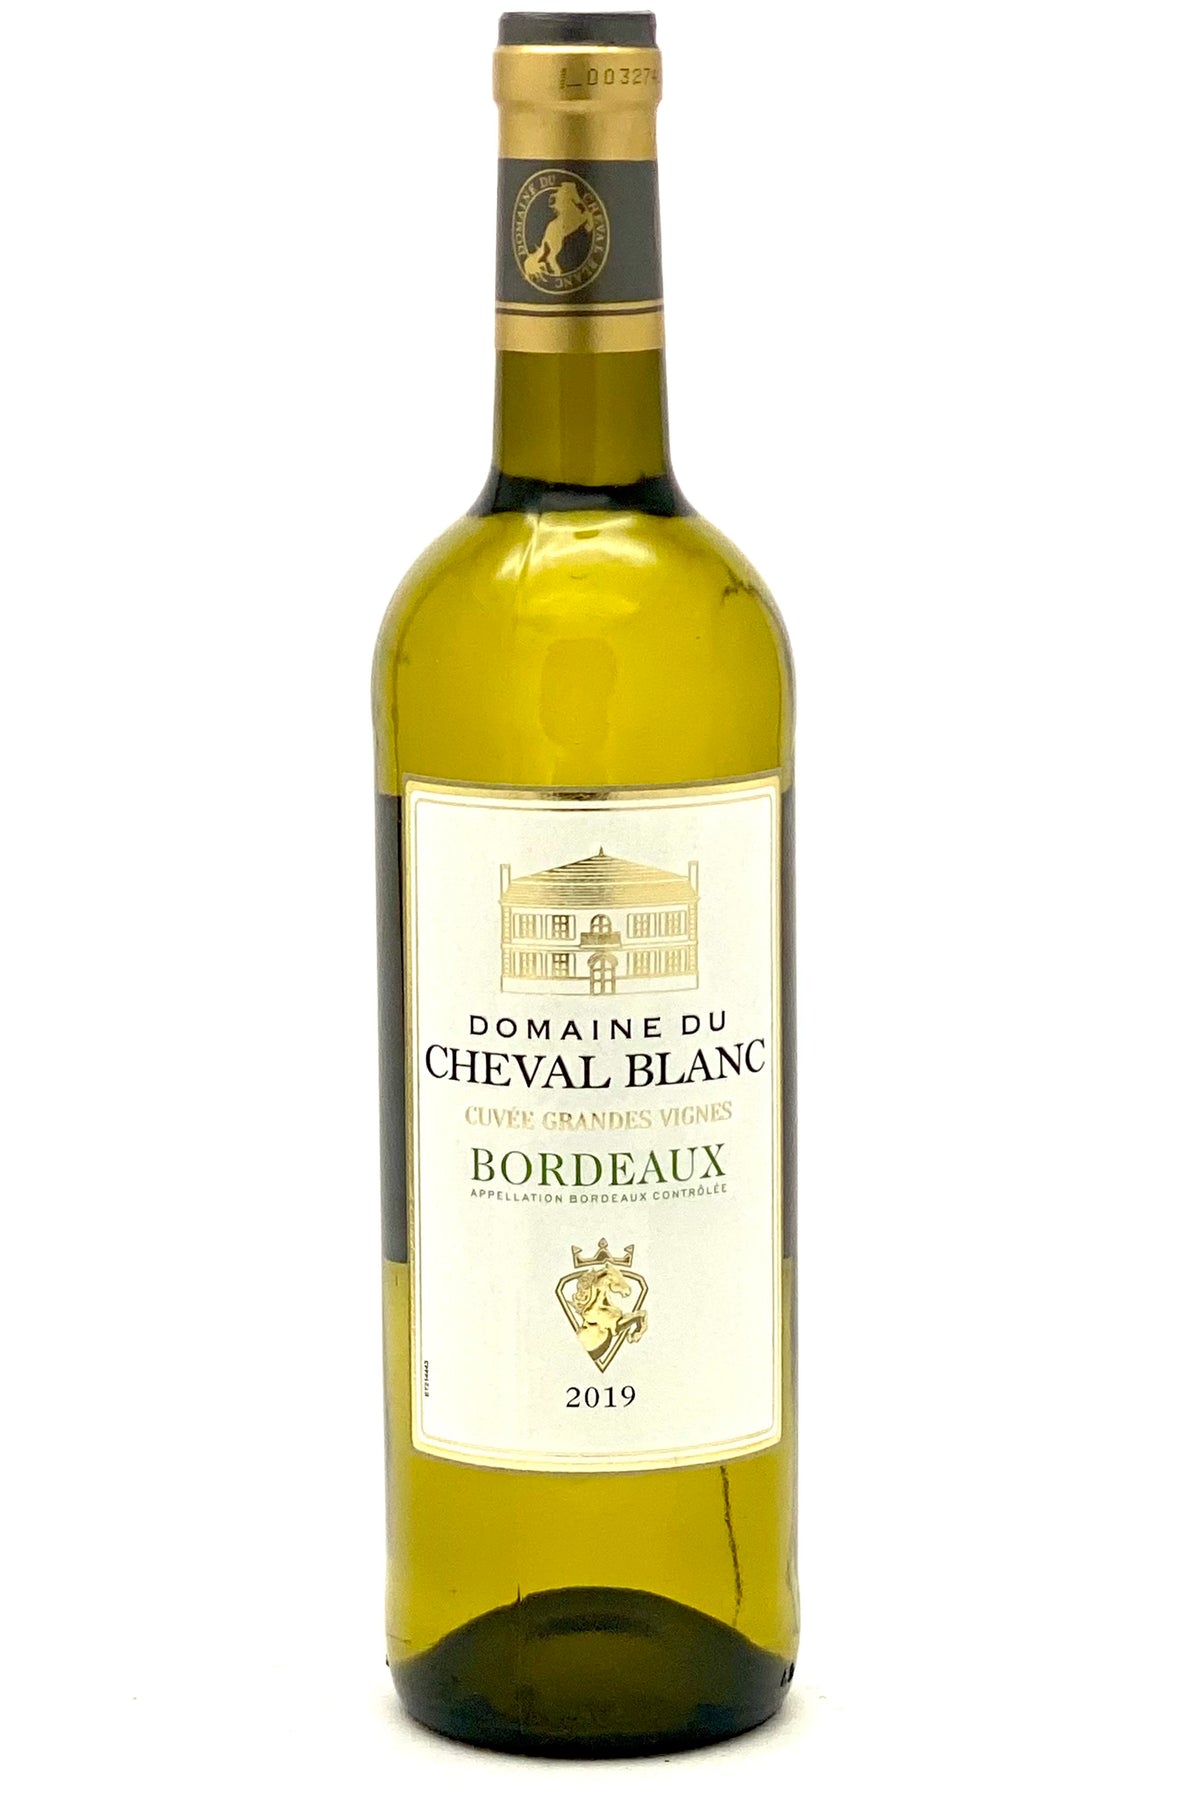 Domaine du Cheval Blanc 2019 Bordeaux Blanc Cuvée Grandes Vignes